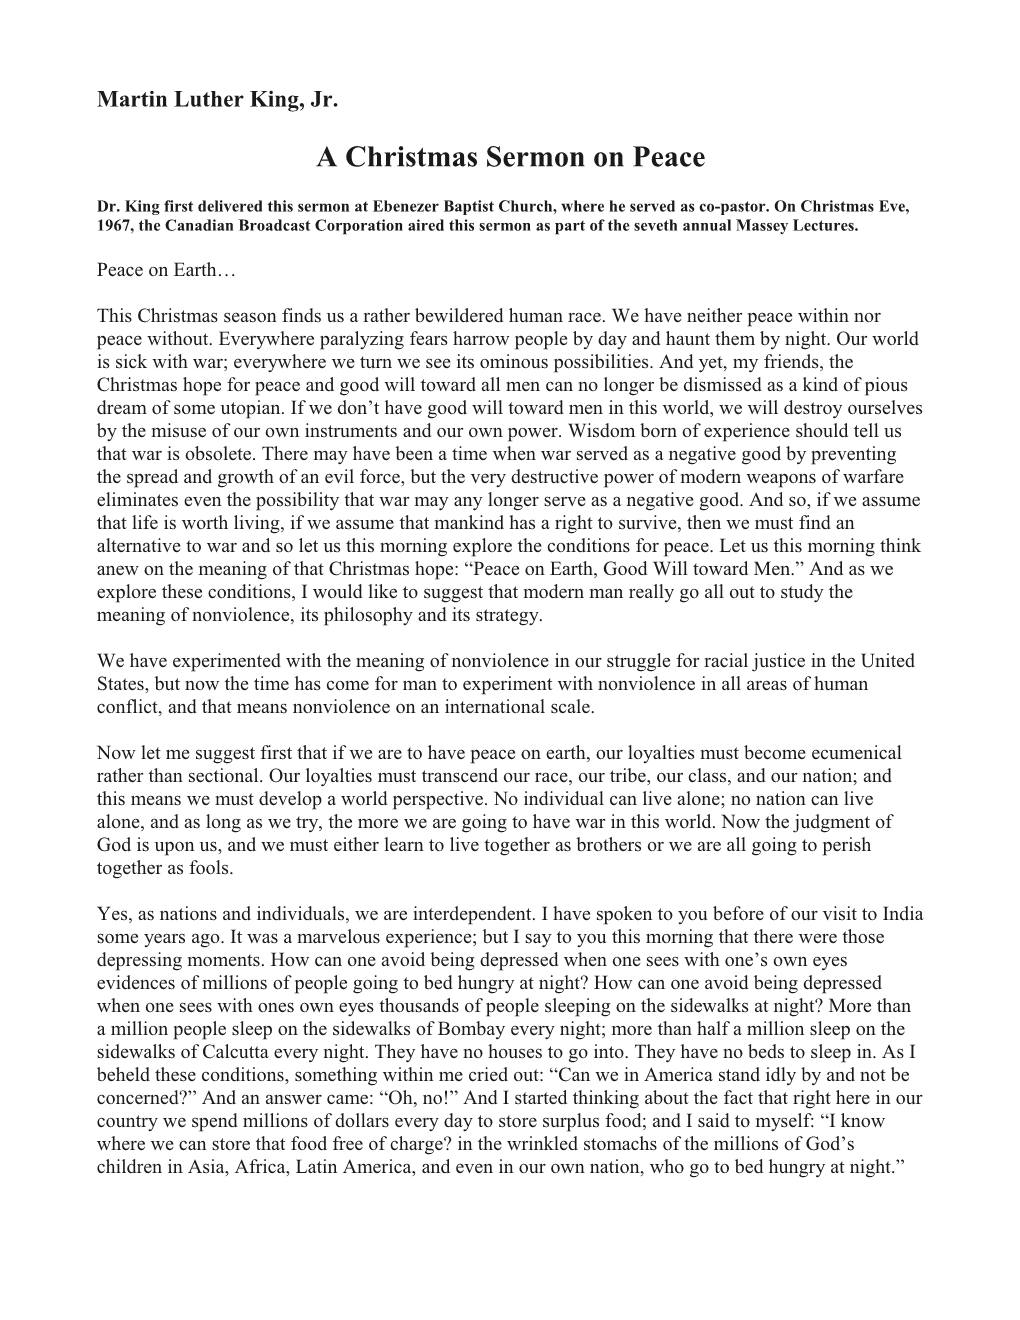 A Christmas Sermon on Peace